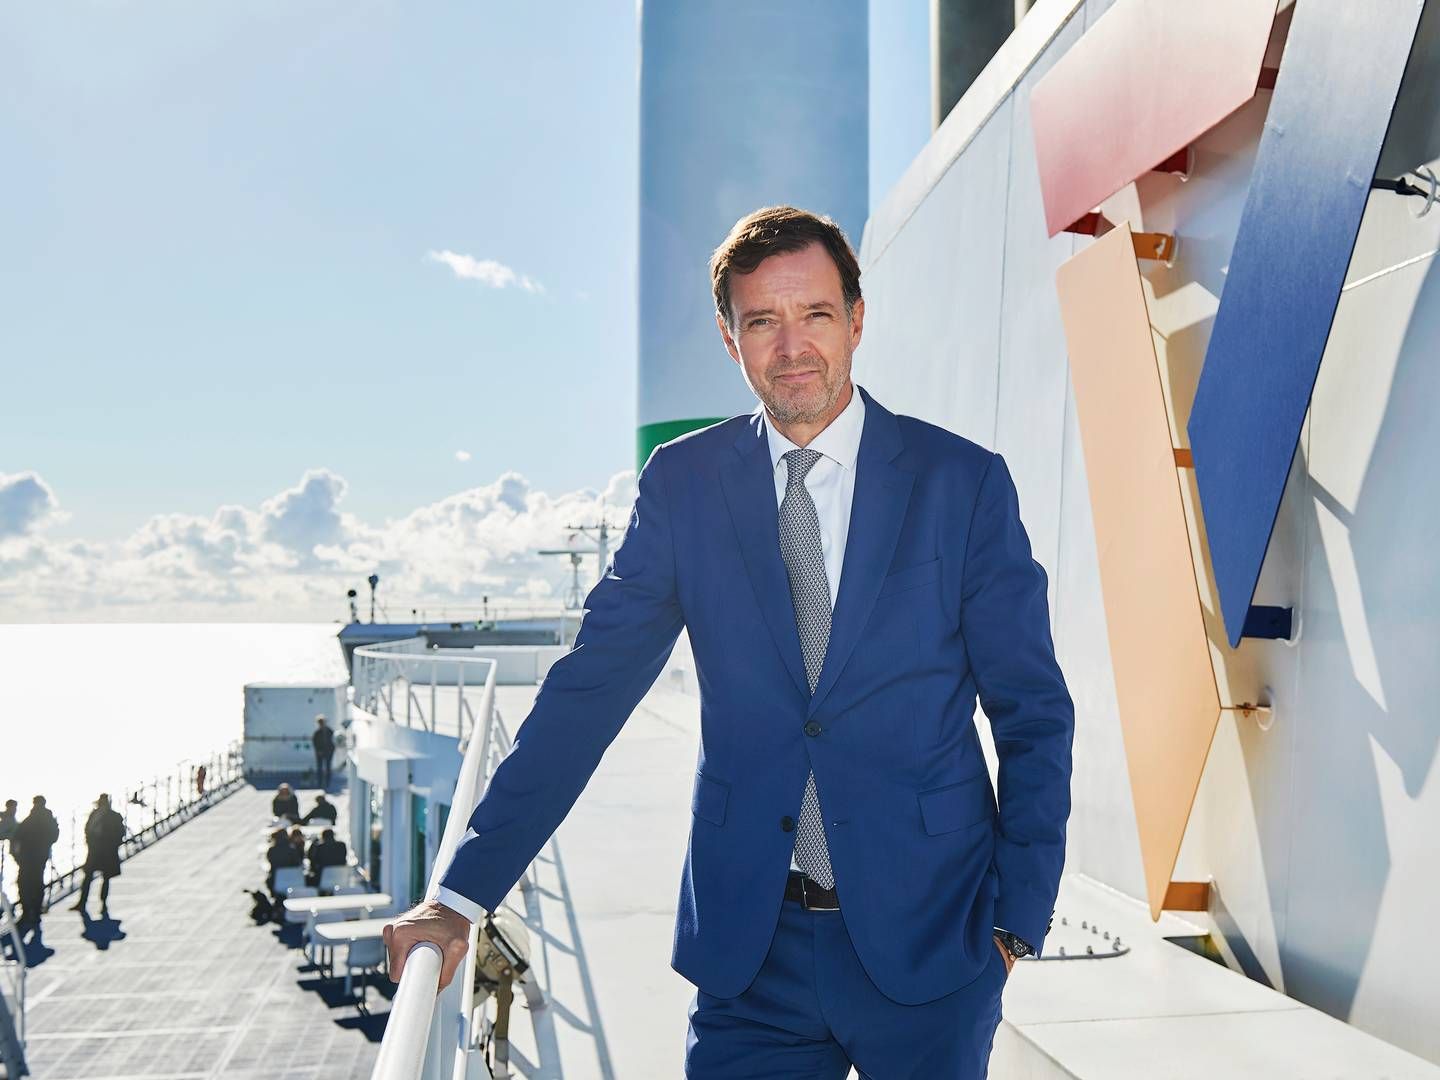 ”Jeg er stolt over at overdrage en velfungerende og grønnere færgedrift med stort fokus på kundeoplevelsen,” skriver Carsten Nørlund om sin tid som topchef for Scandlines. | Foto: Patrick Kirkby/scandlines